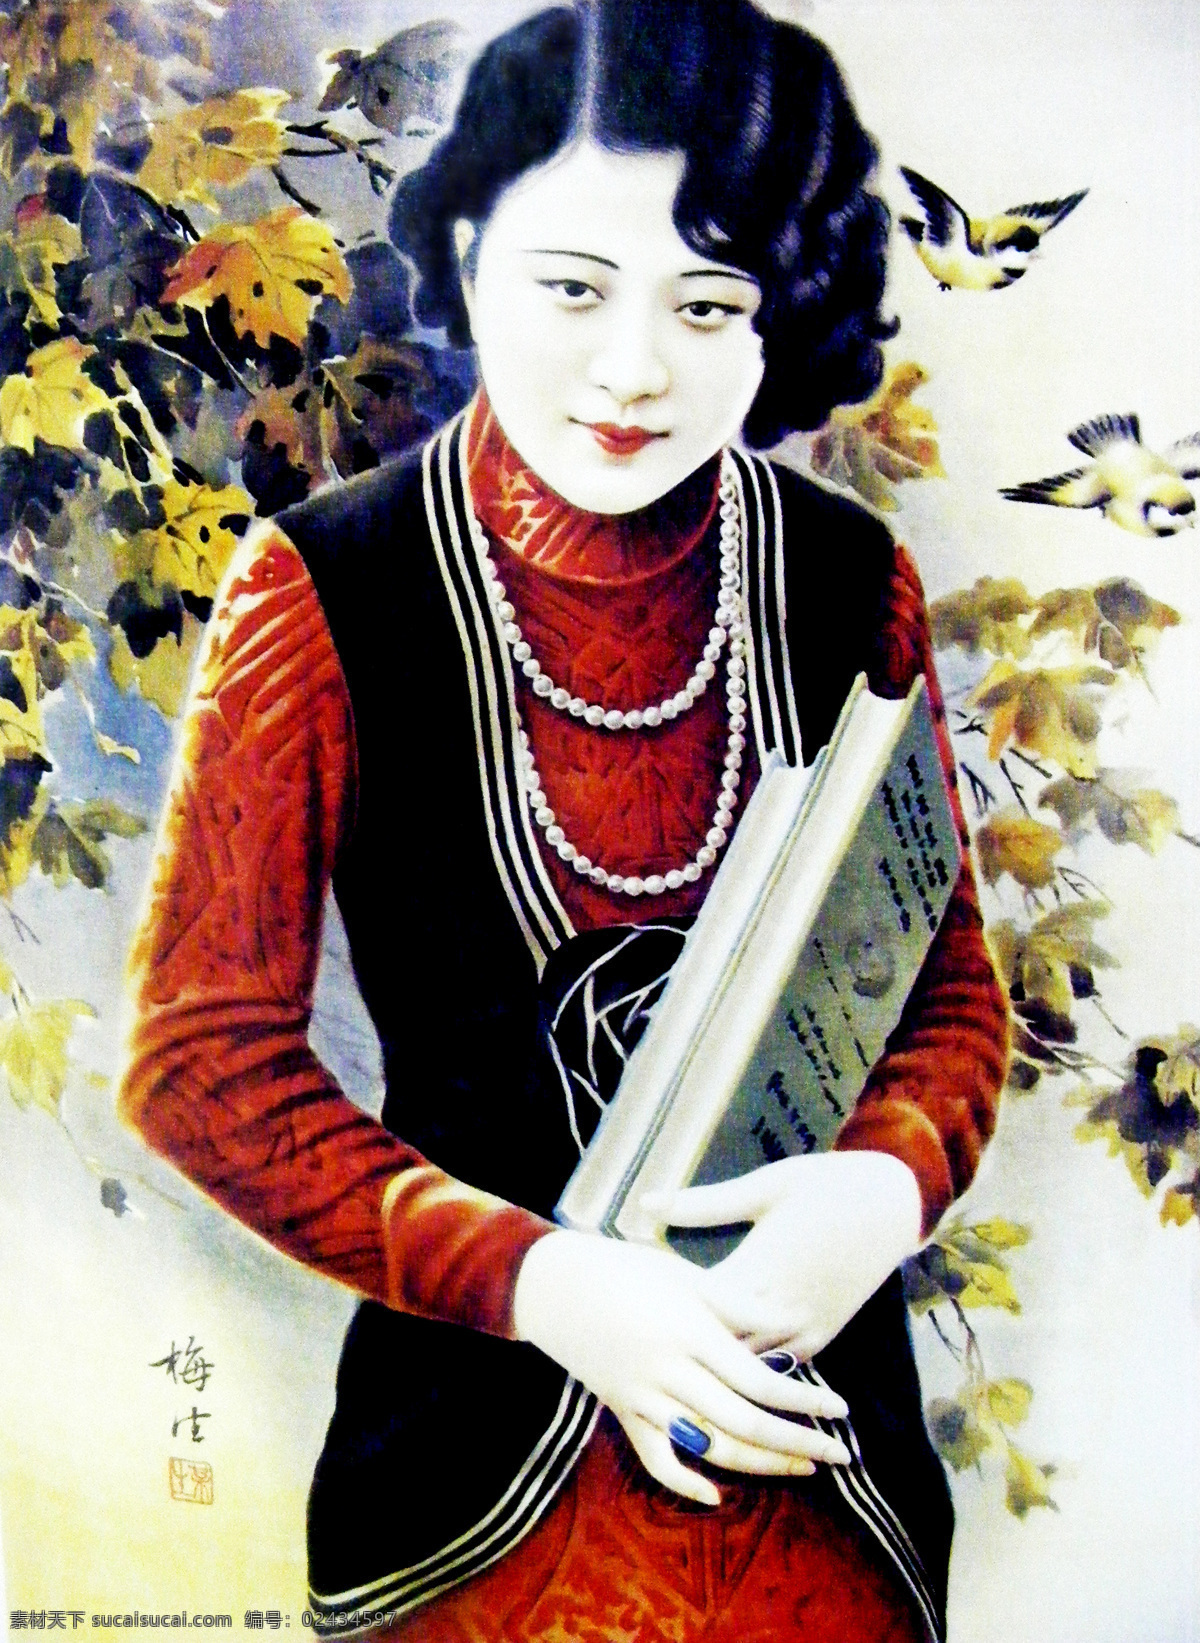 老上海月份牌 老上海 月份牌 美女 旗袍 旗袍美女 瑰宝 文化艺术 绘画书法 设计图库